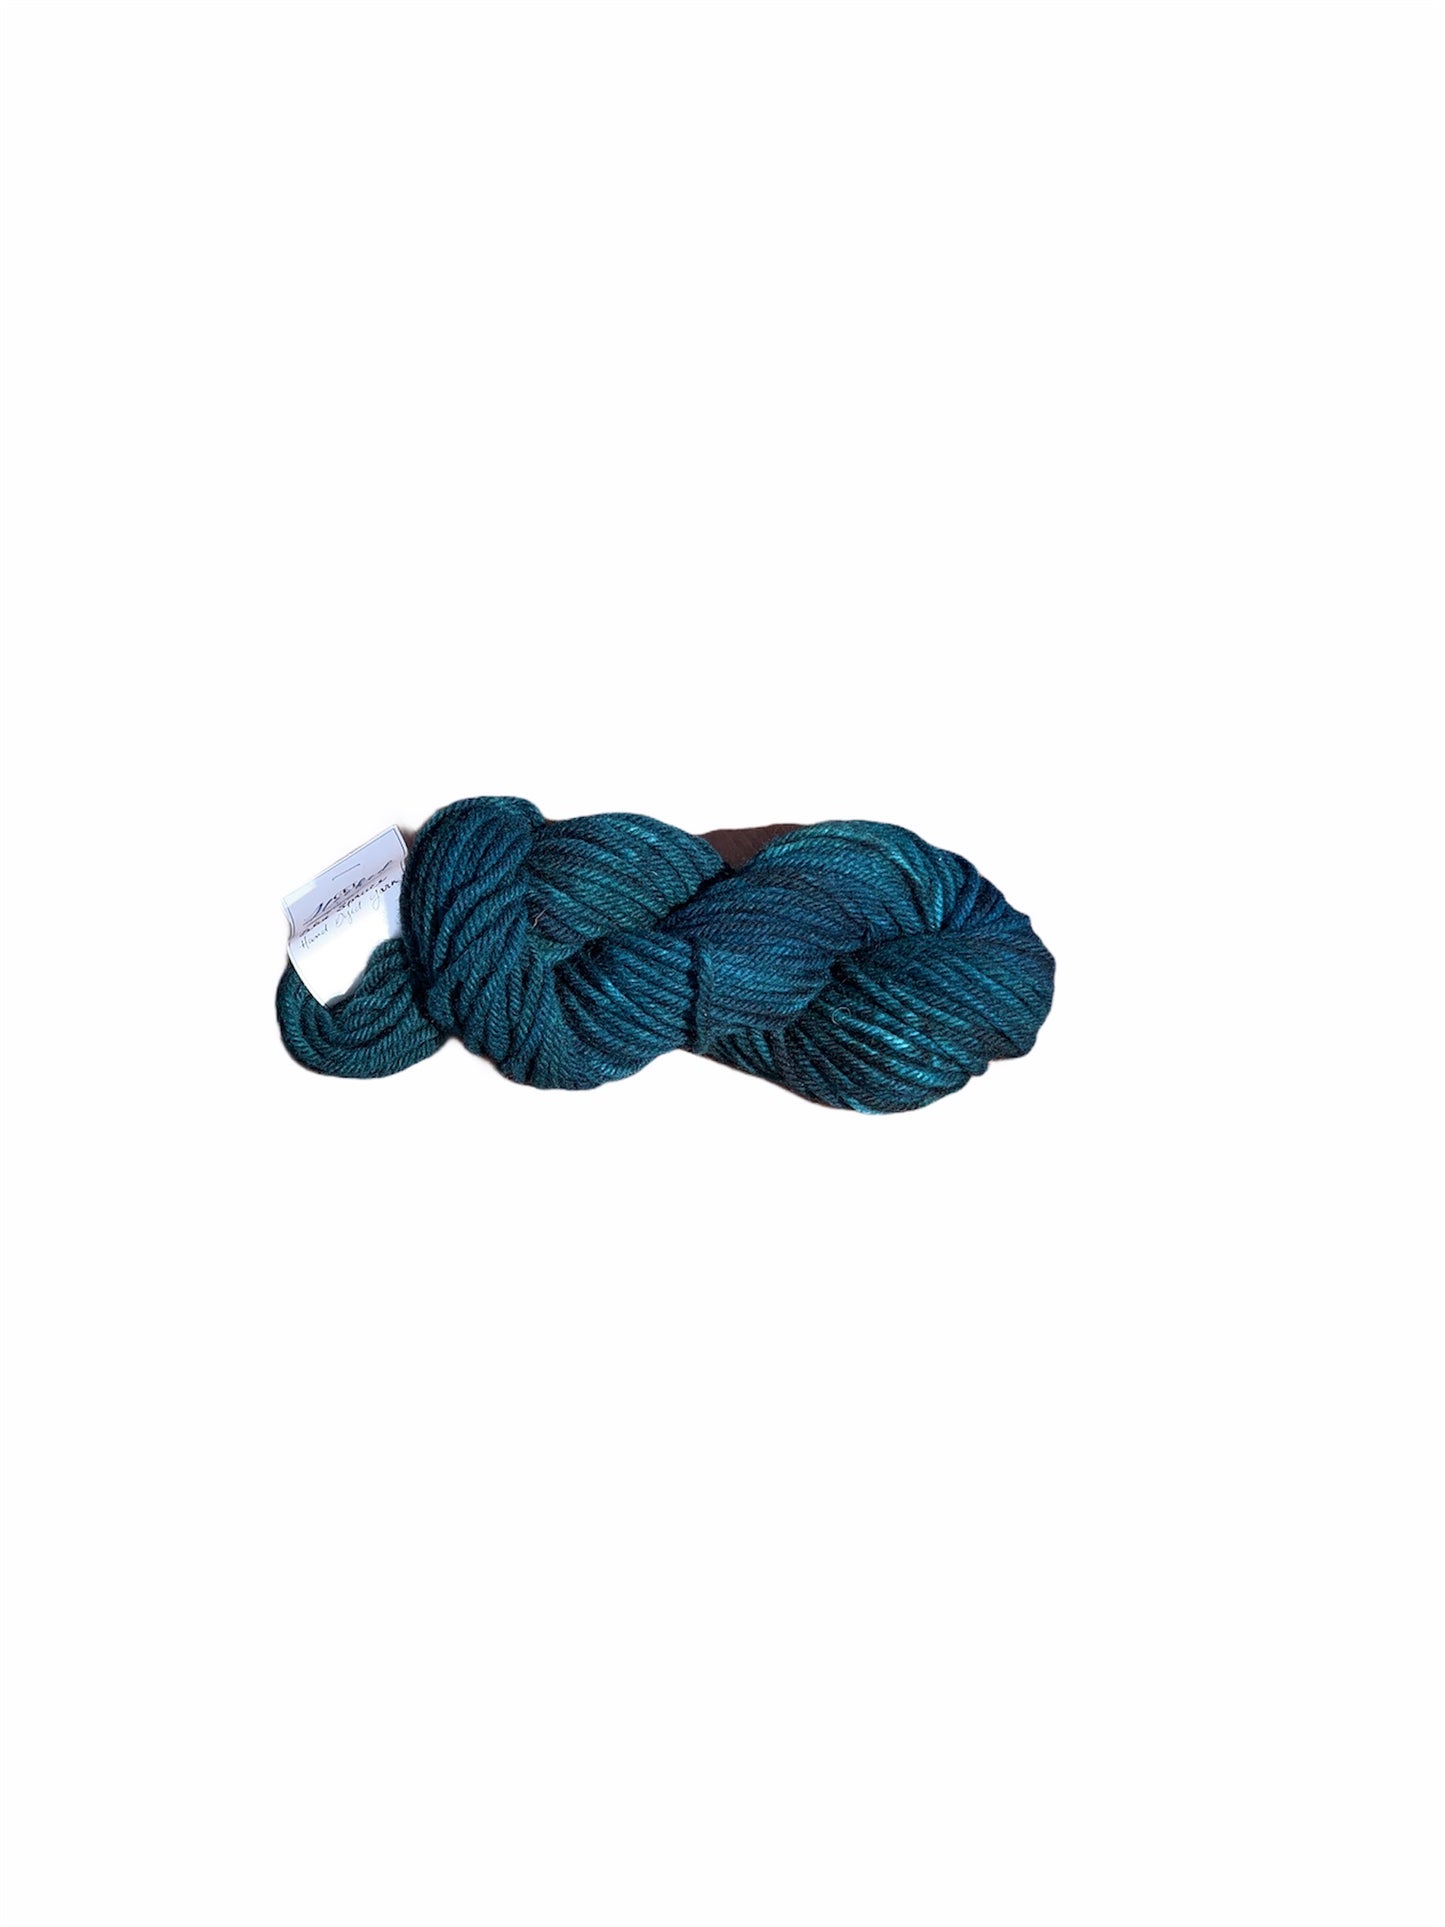 Blue Spruce Studio Dyed Yarn